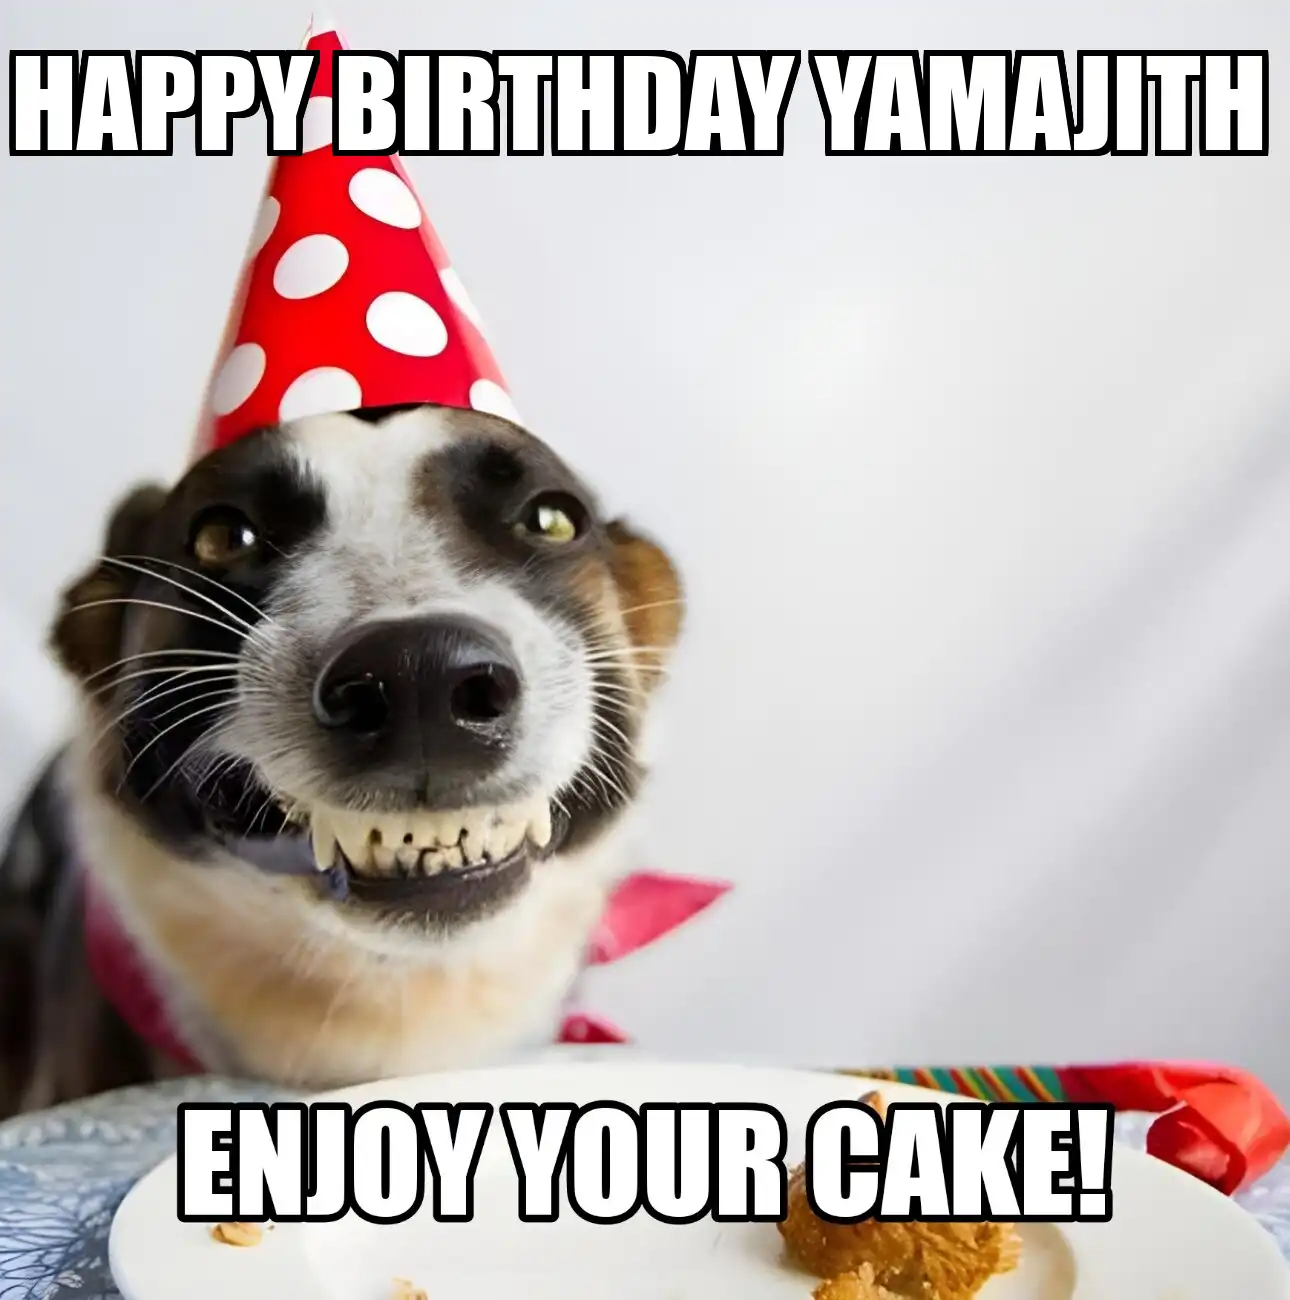 Happy Birthday Yamajith Enjoy Your Cake Dog Meme